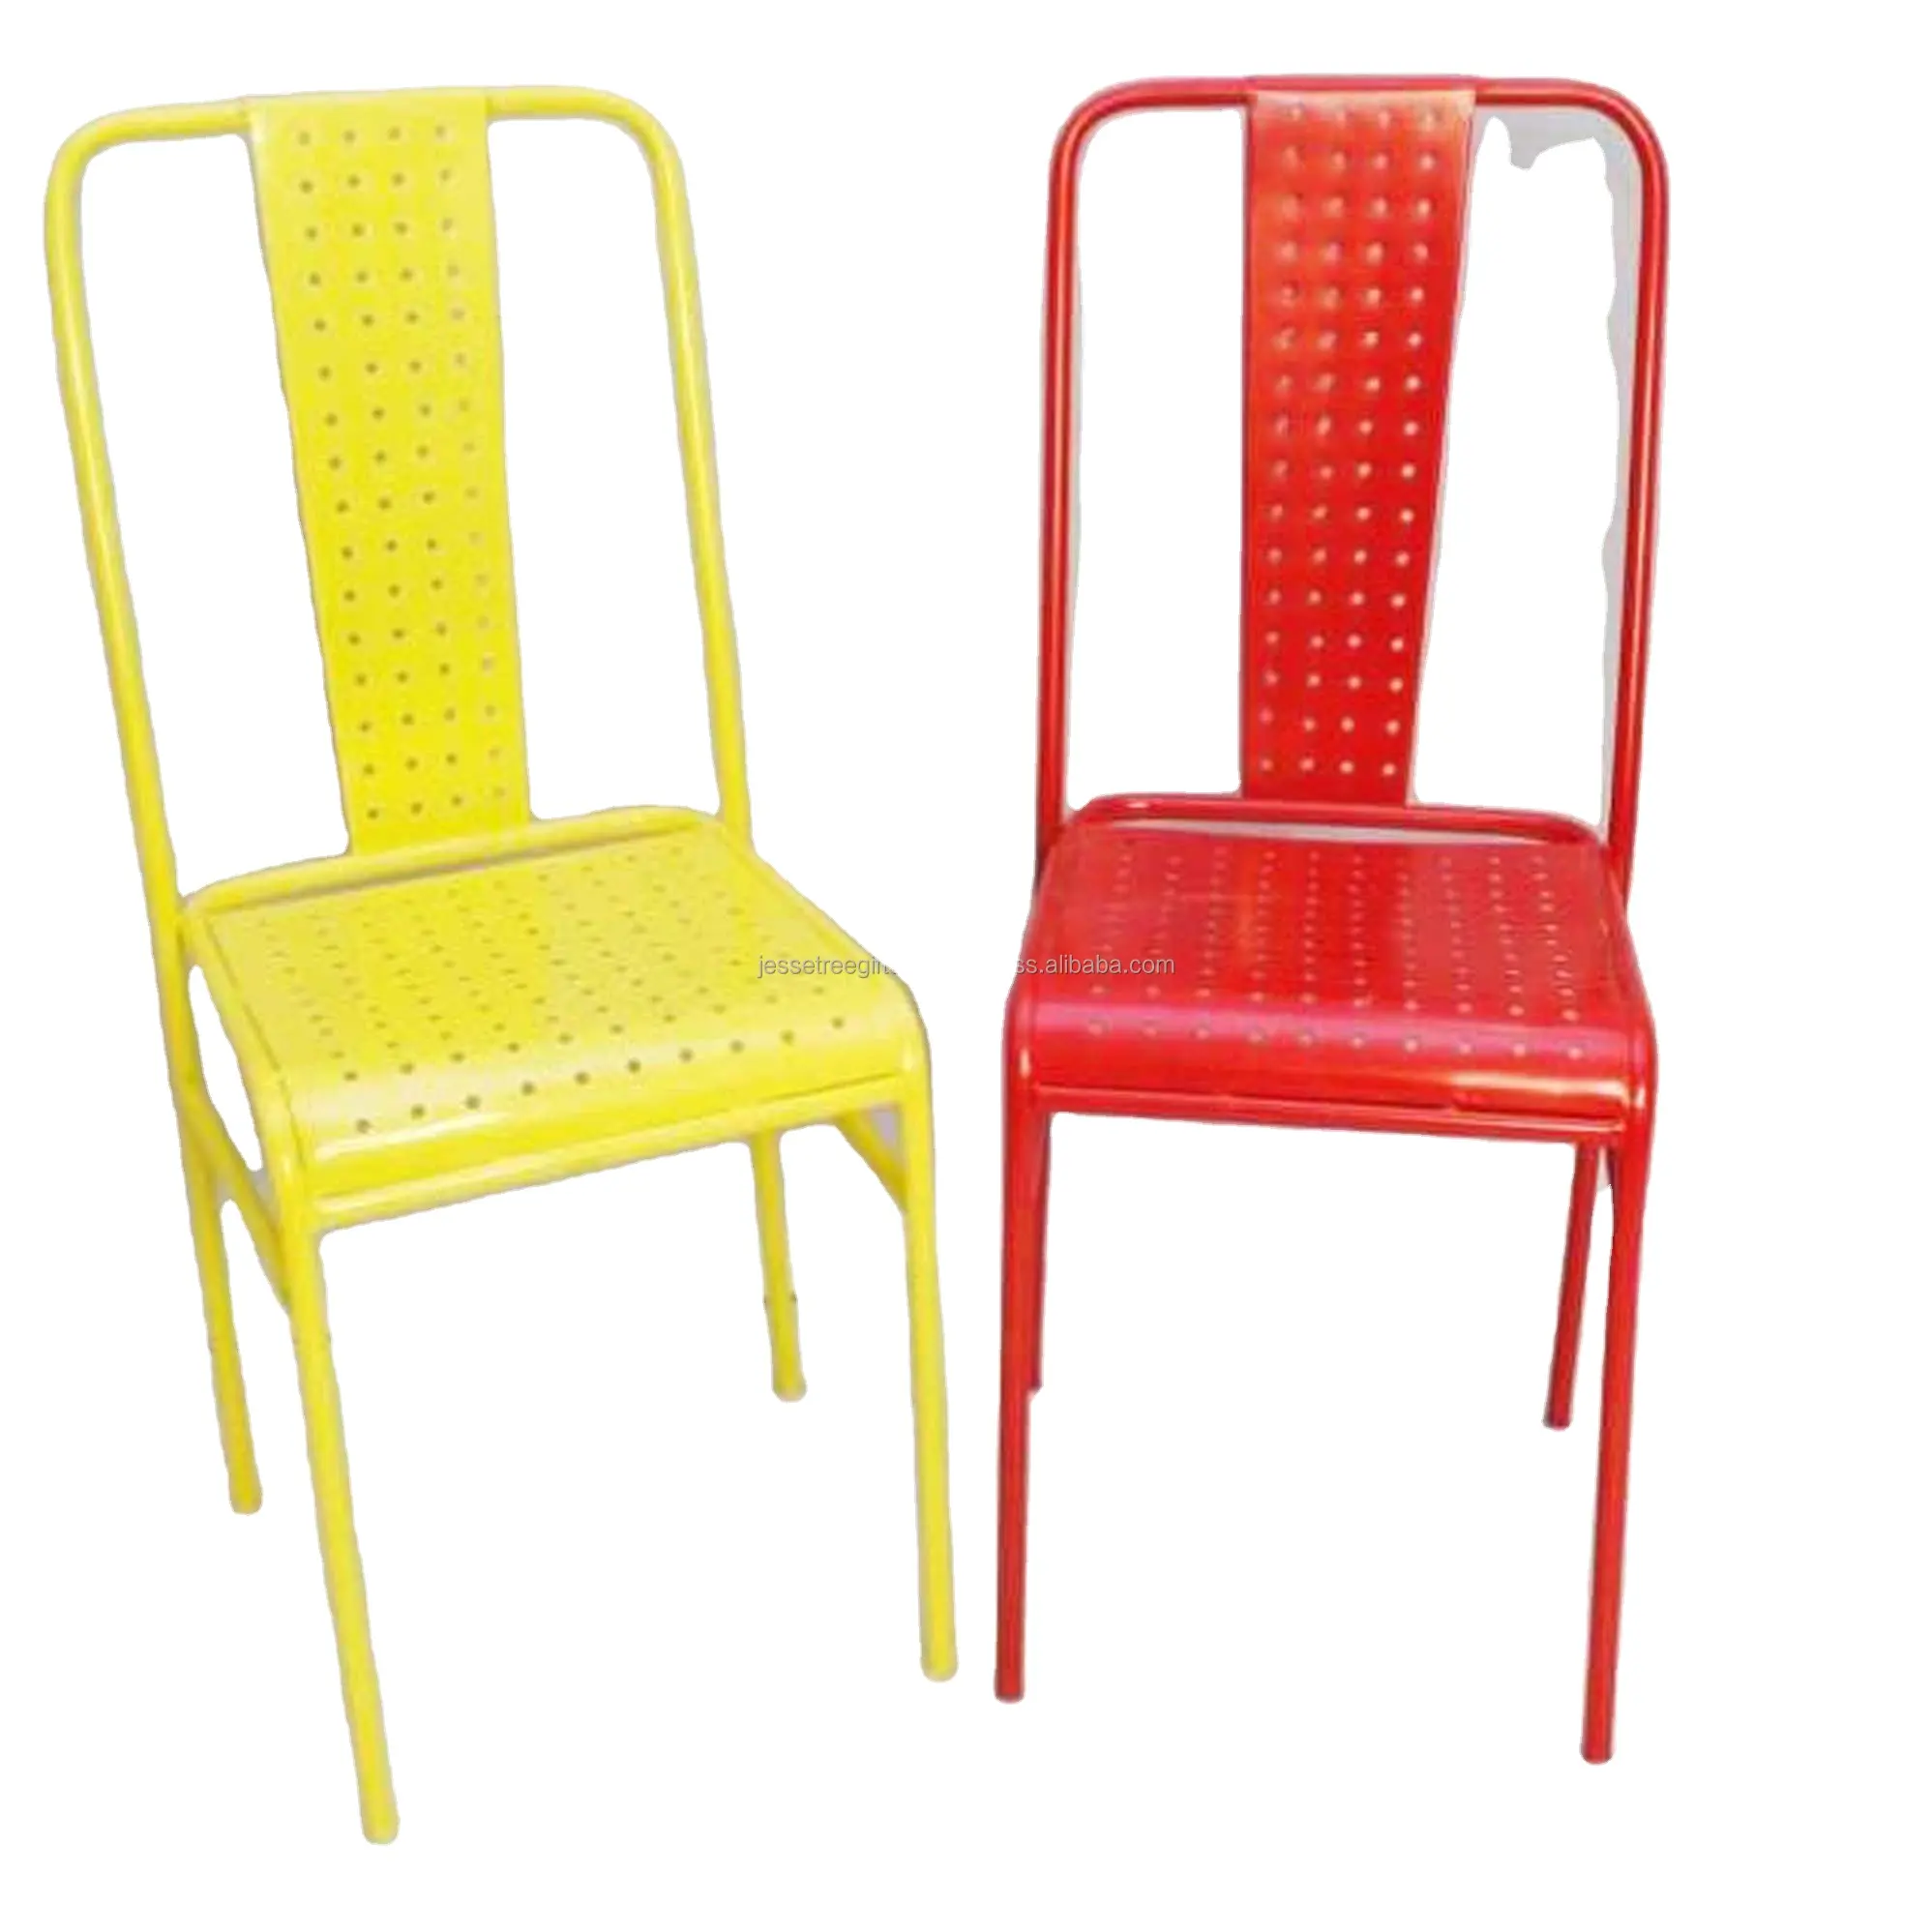 Металлический декоративный стул с желтым и красным порошковым покрытием, отделка, дизайн, отличное качество для сидения, комплект из 2 человек